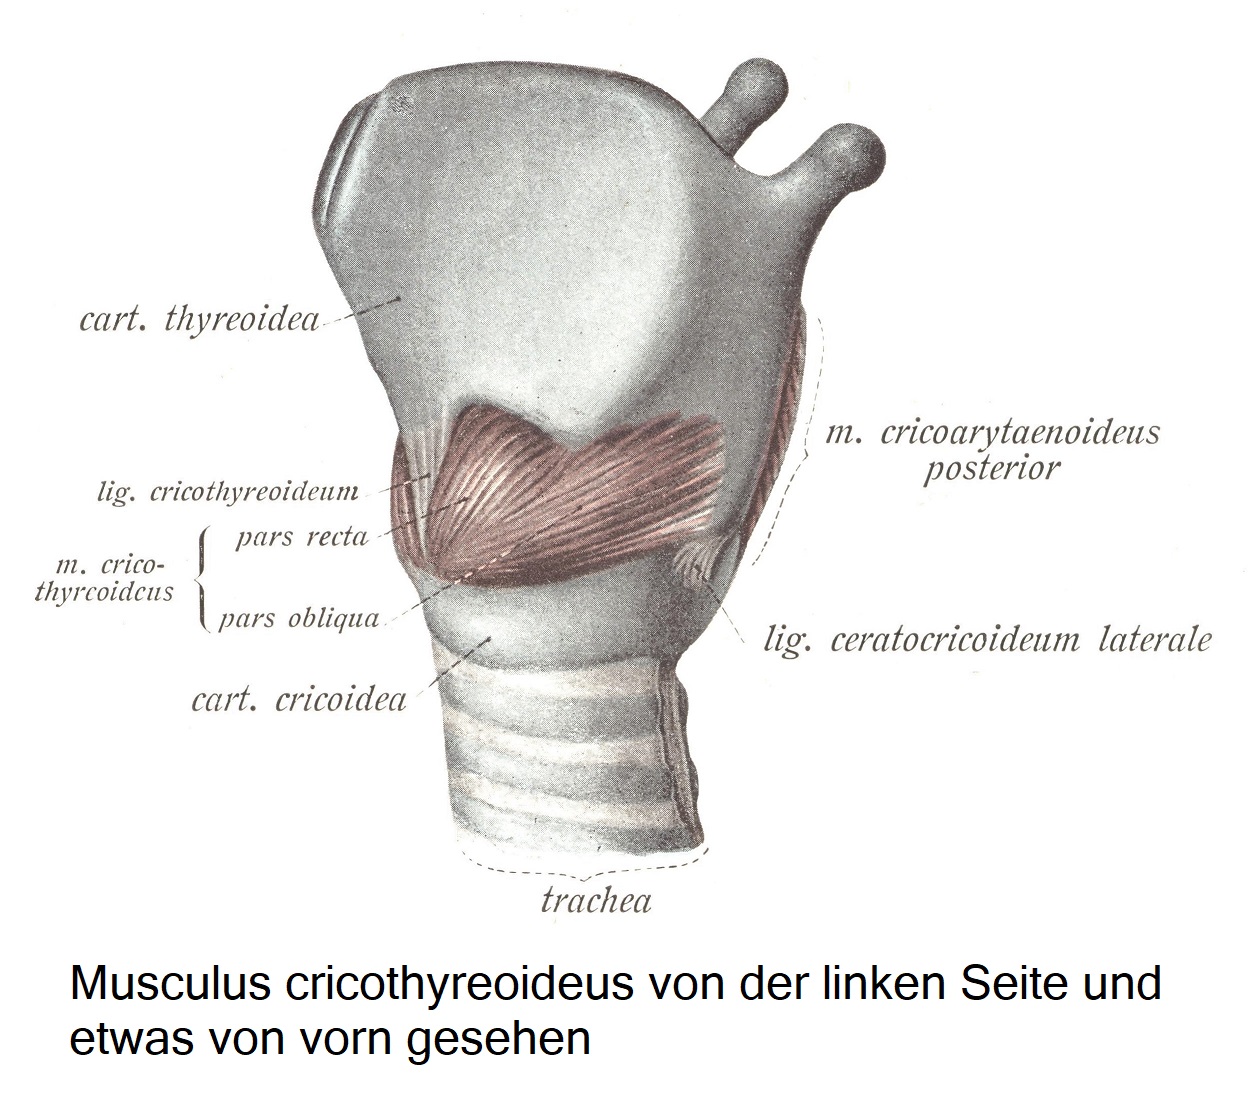 Перстнещитовидная мышца при осмотре слева и несколько спереди